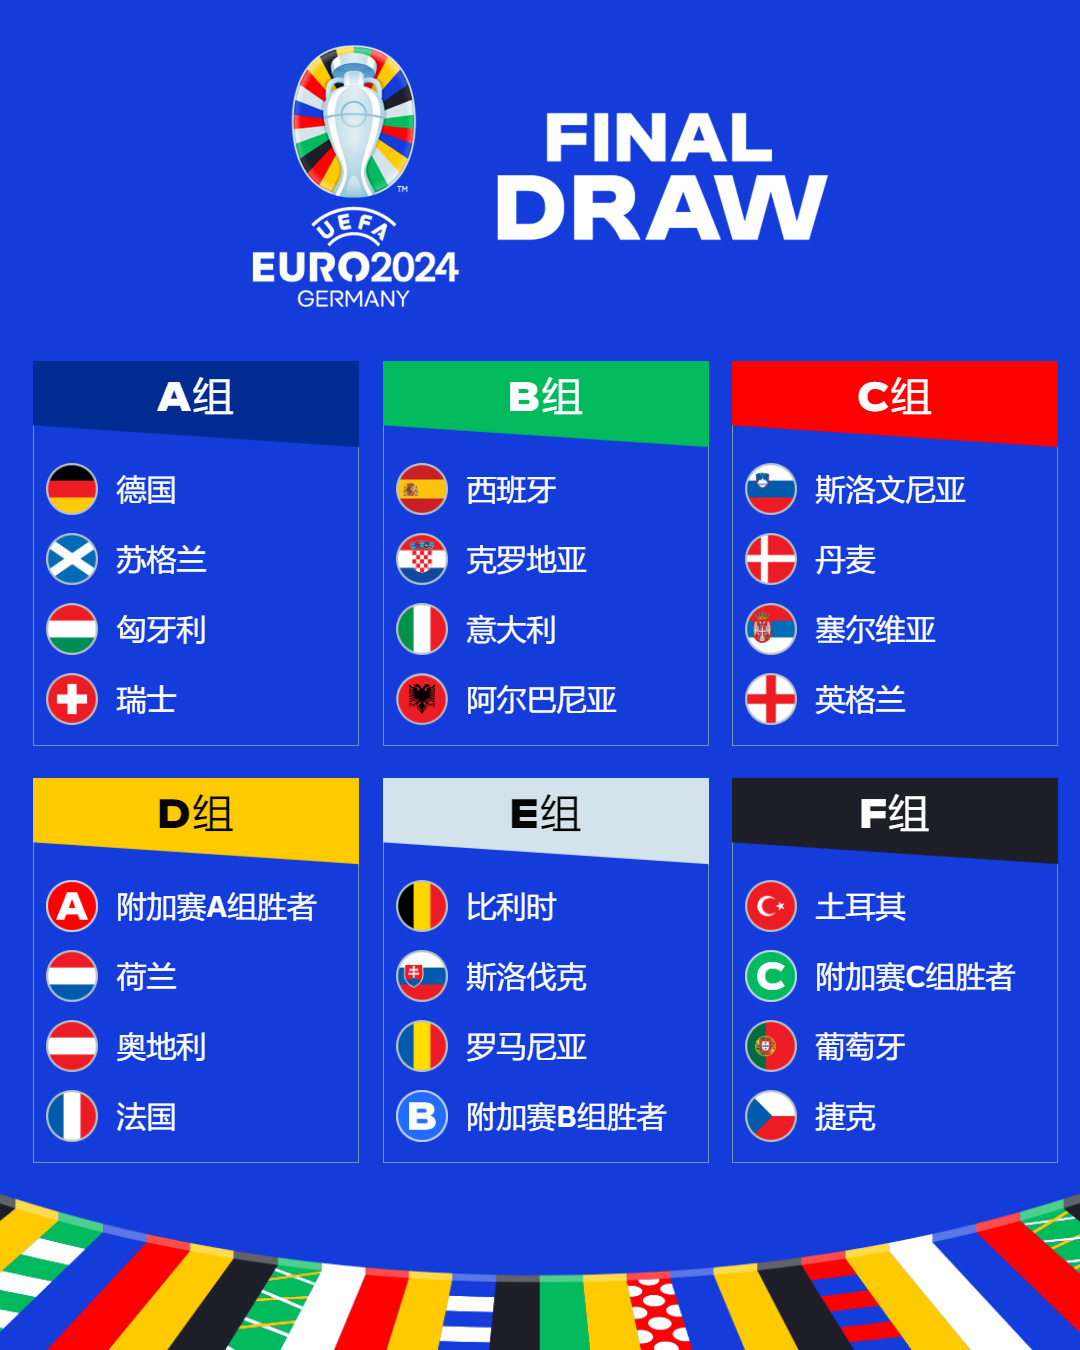 法国在 2024 年欧洲杯预选赛中击败爱尔兰取得五连胜_手机搜狐网